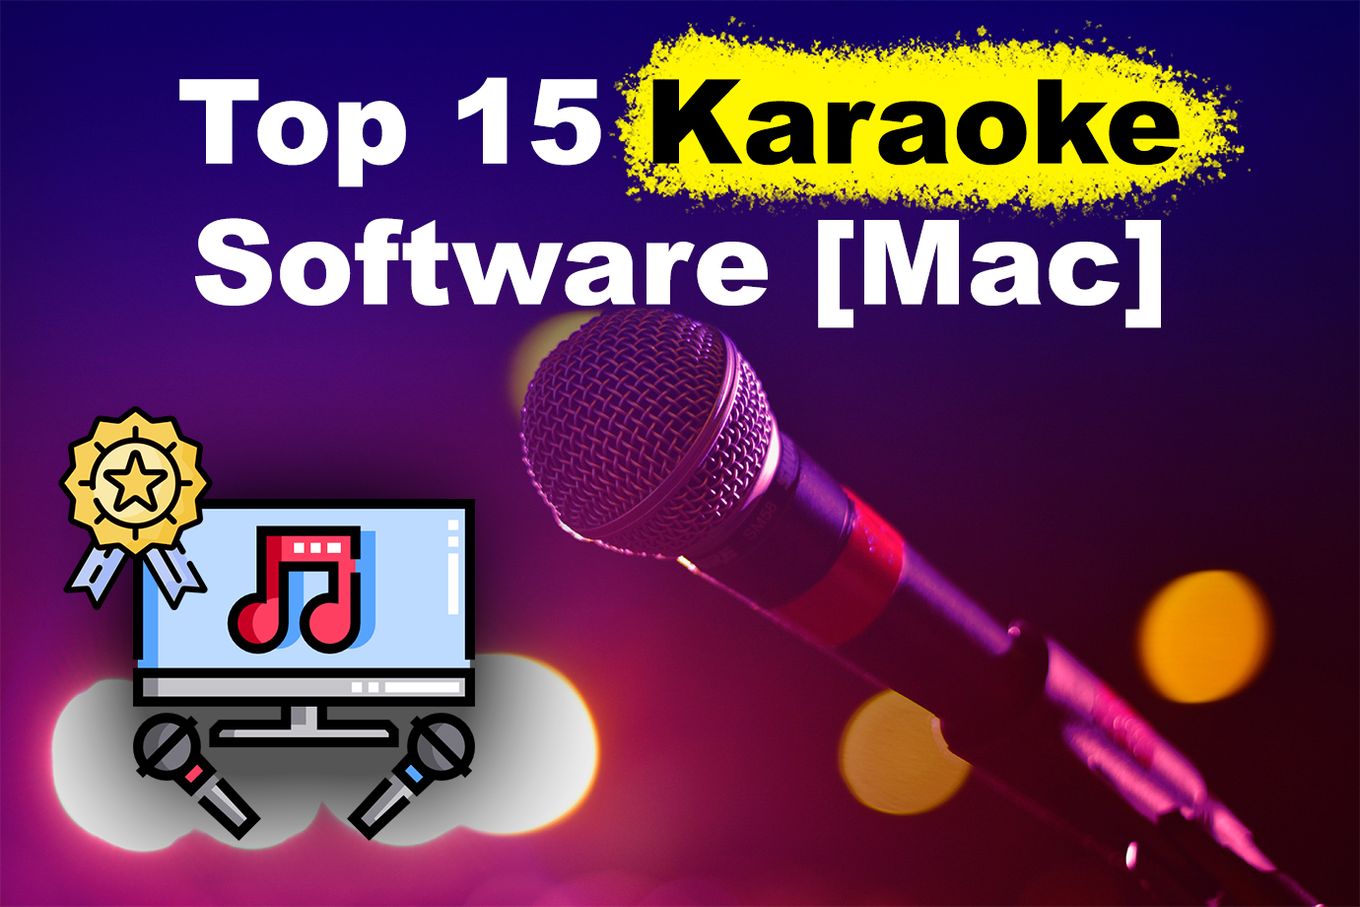 karaoke software mac os x